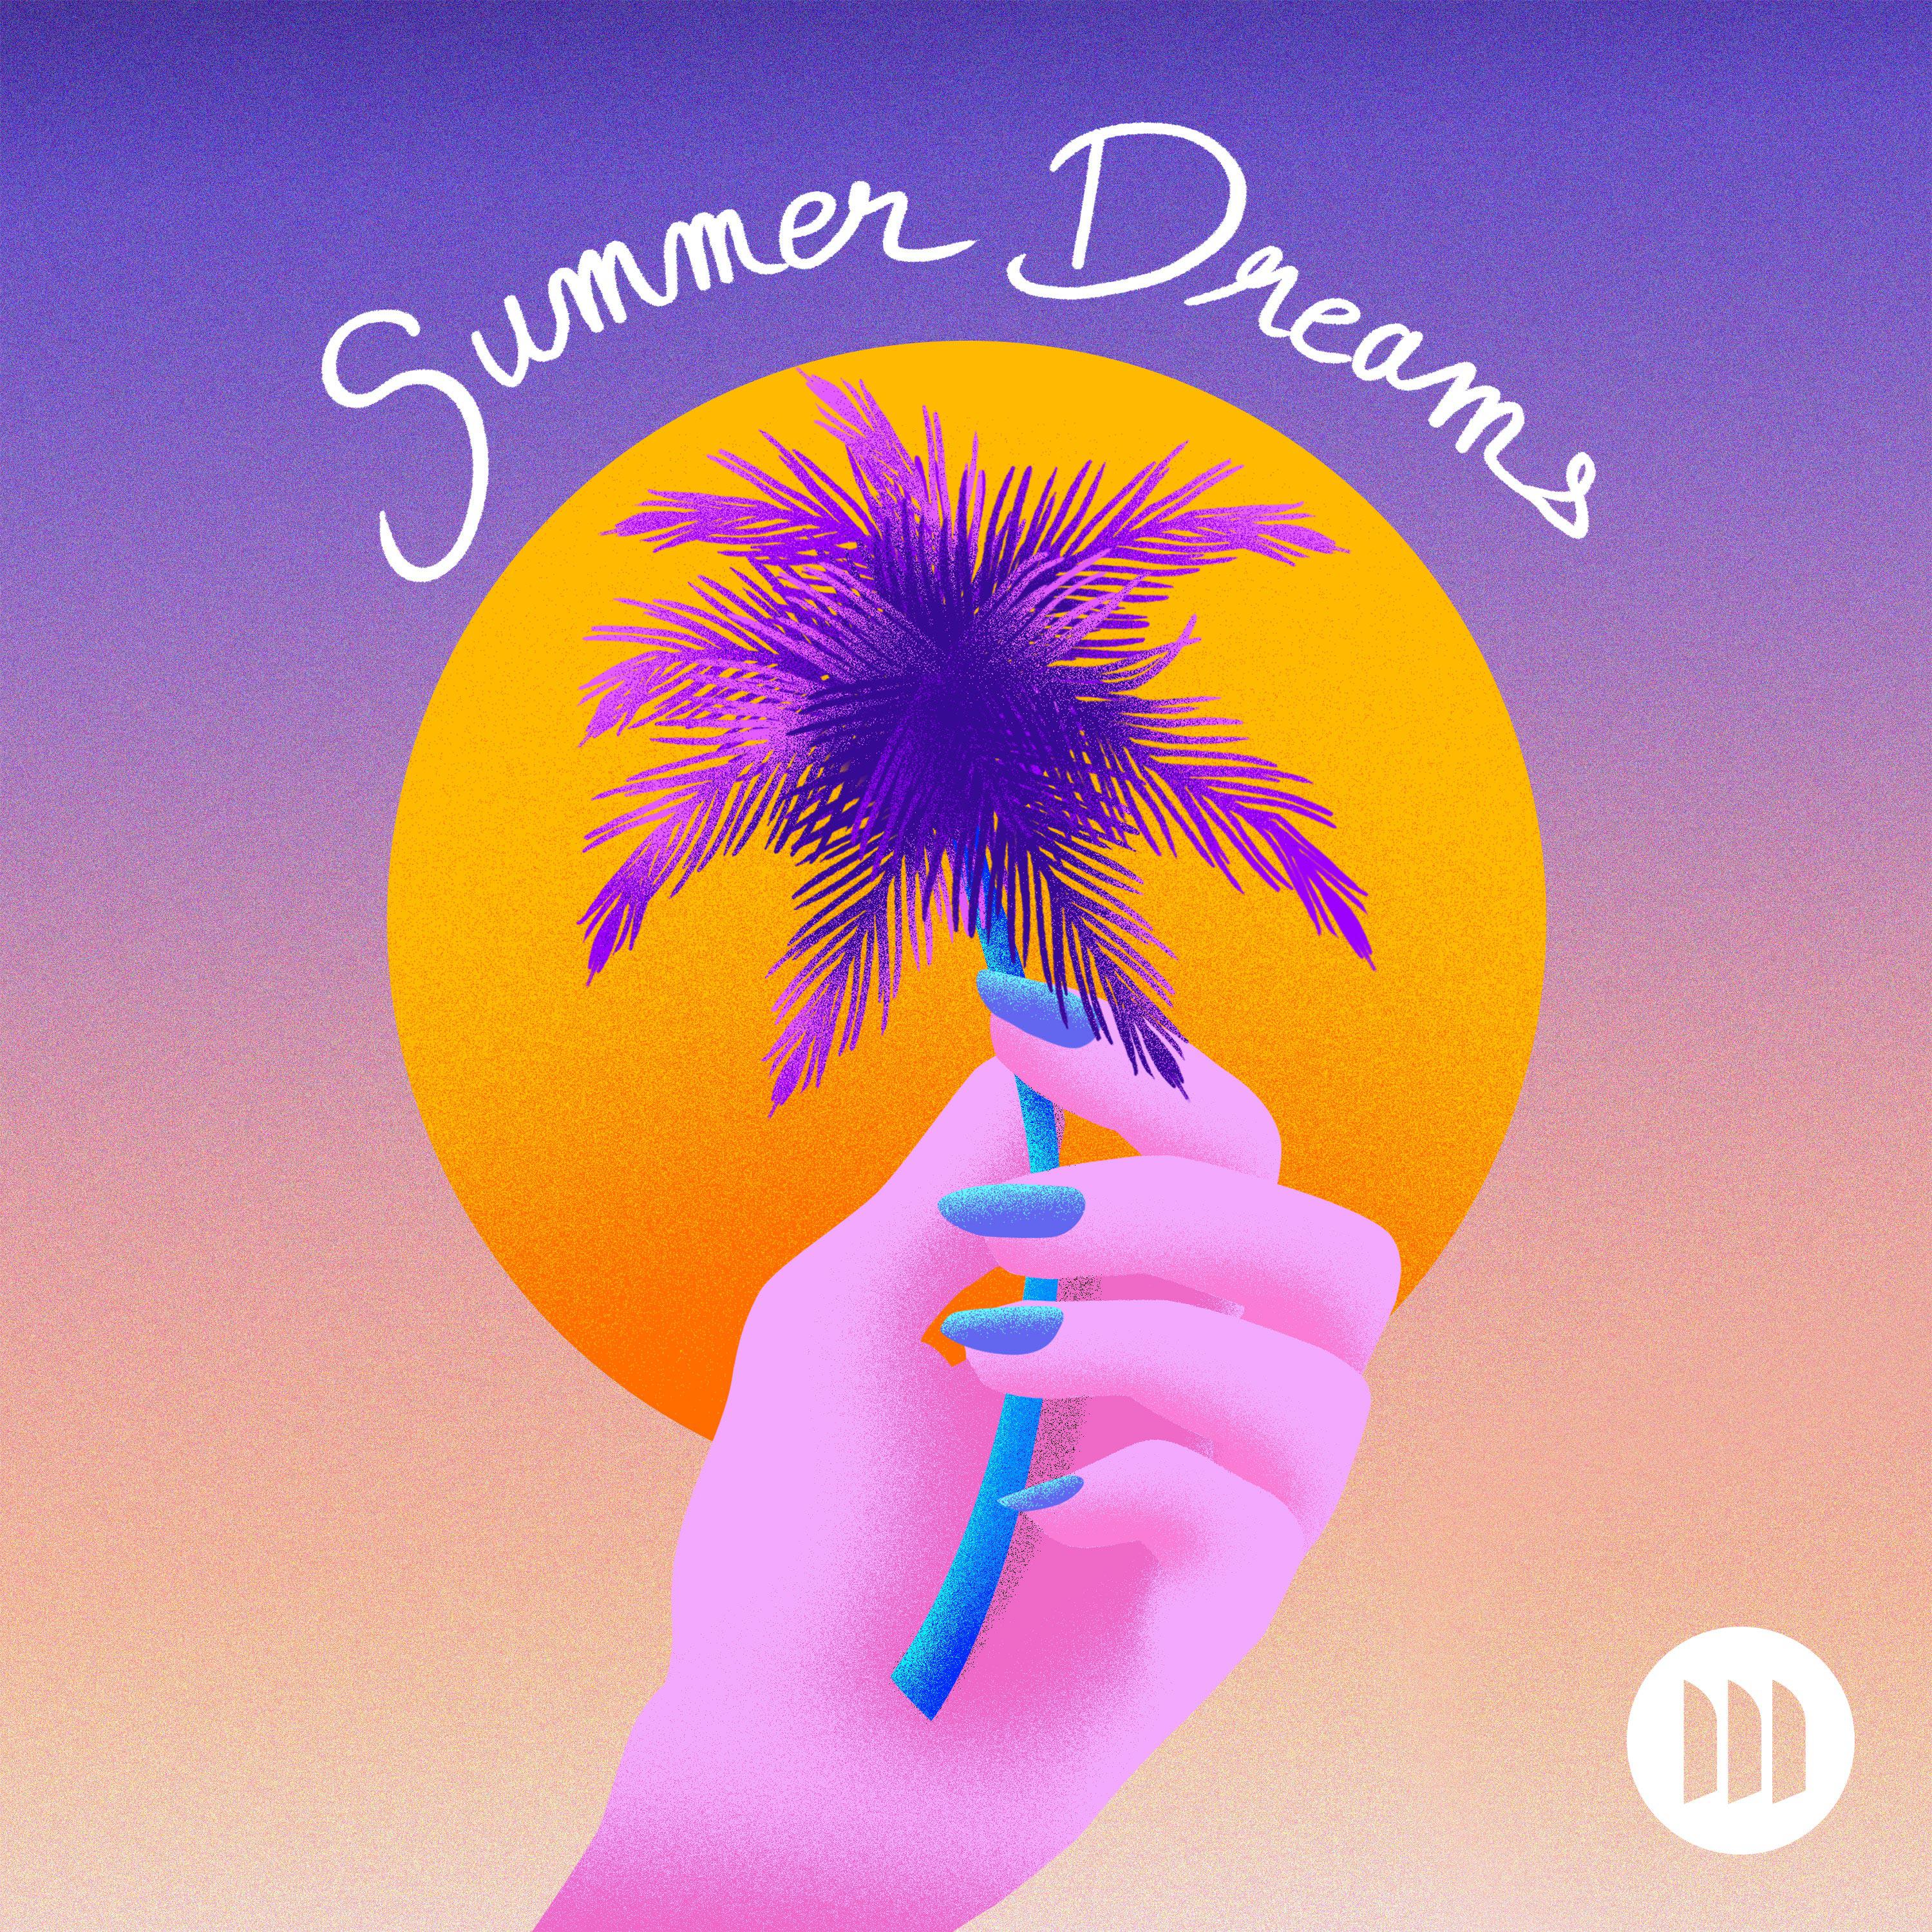 Постер альбома Summer Dreams